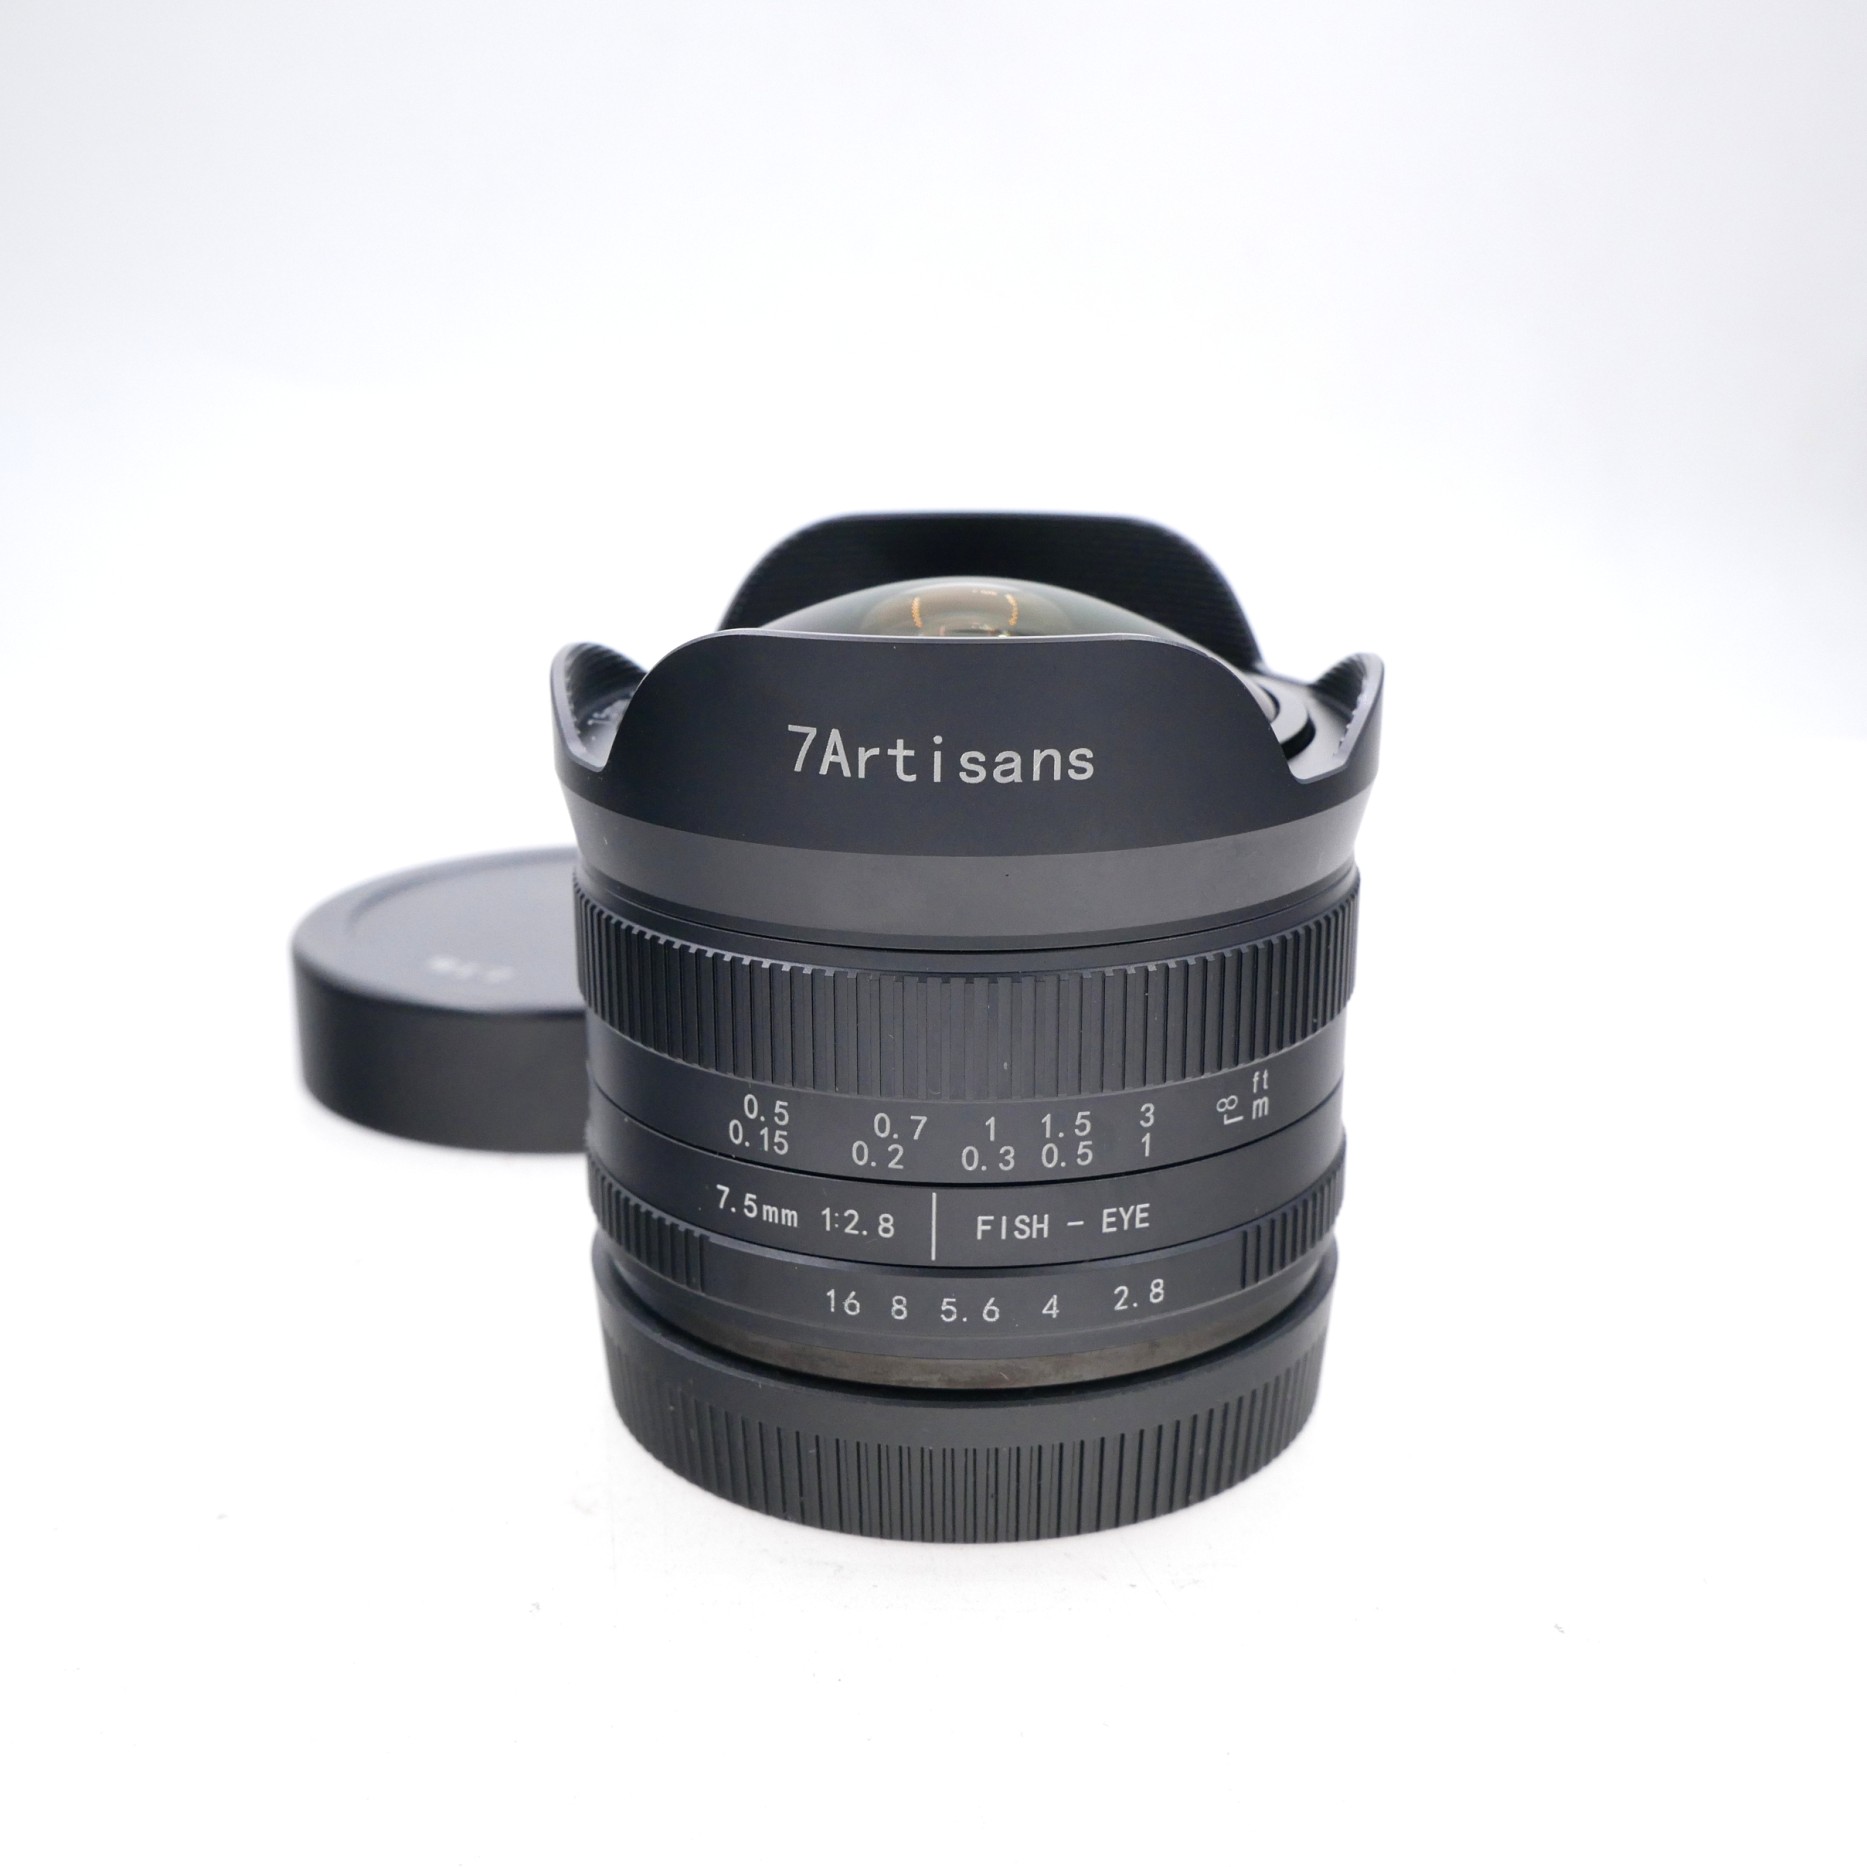 7Artisans 7.5mm F2.8 II Lens for Canon EF-M Mount 